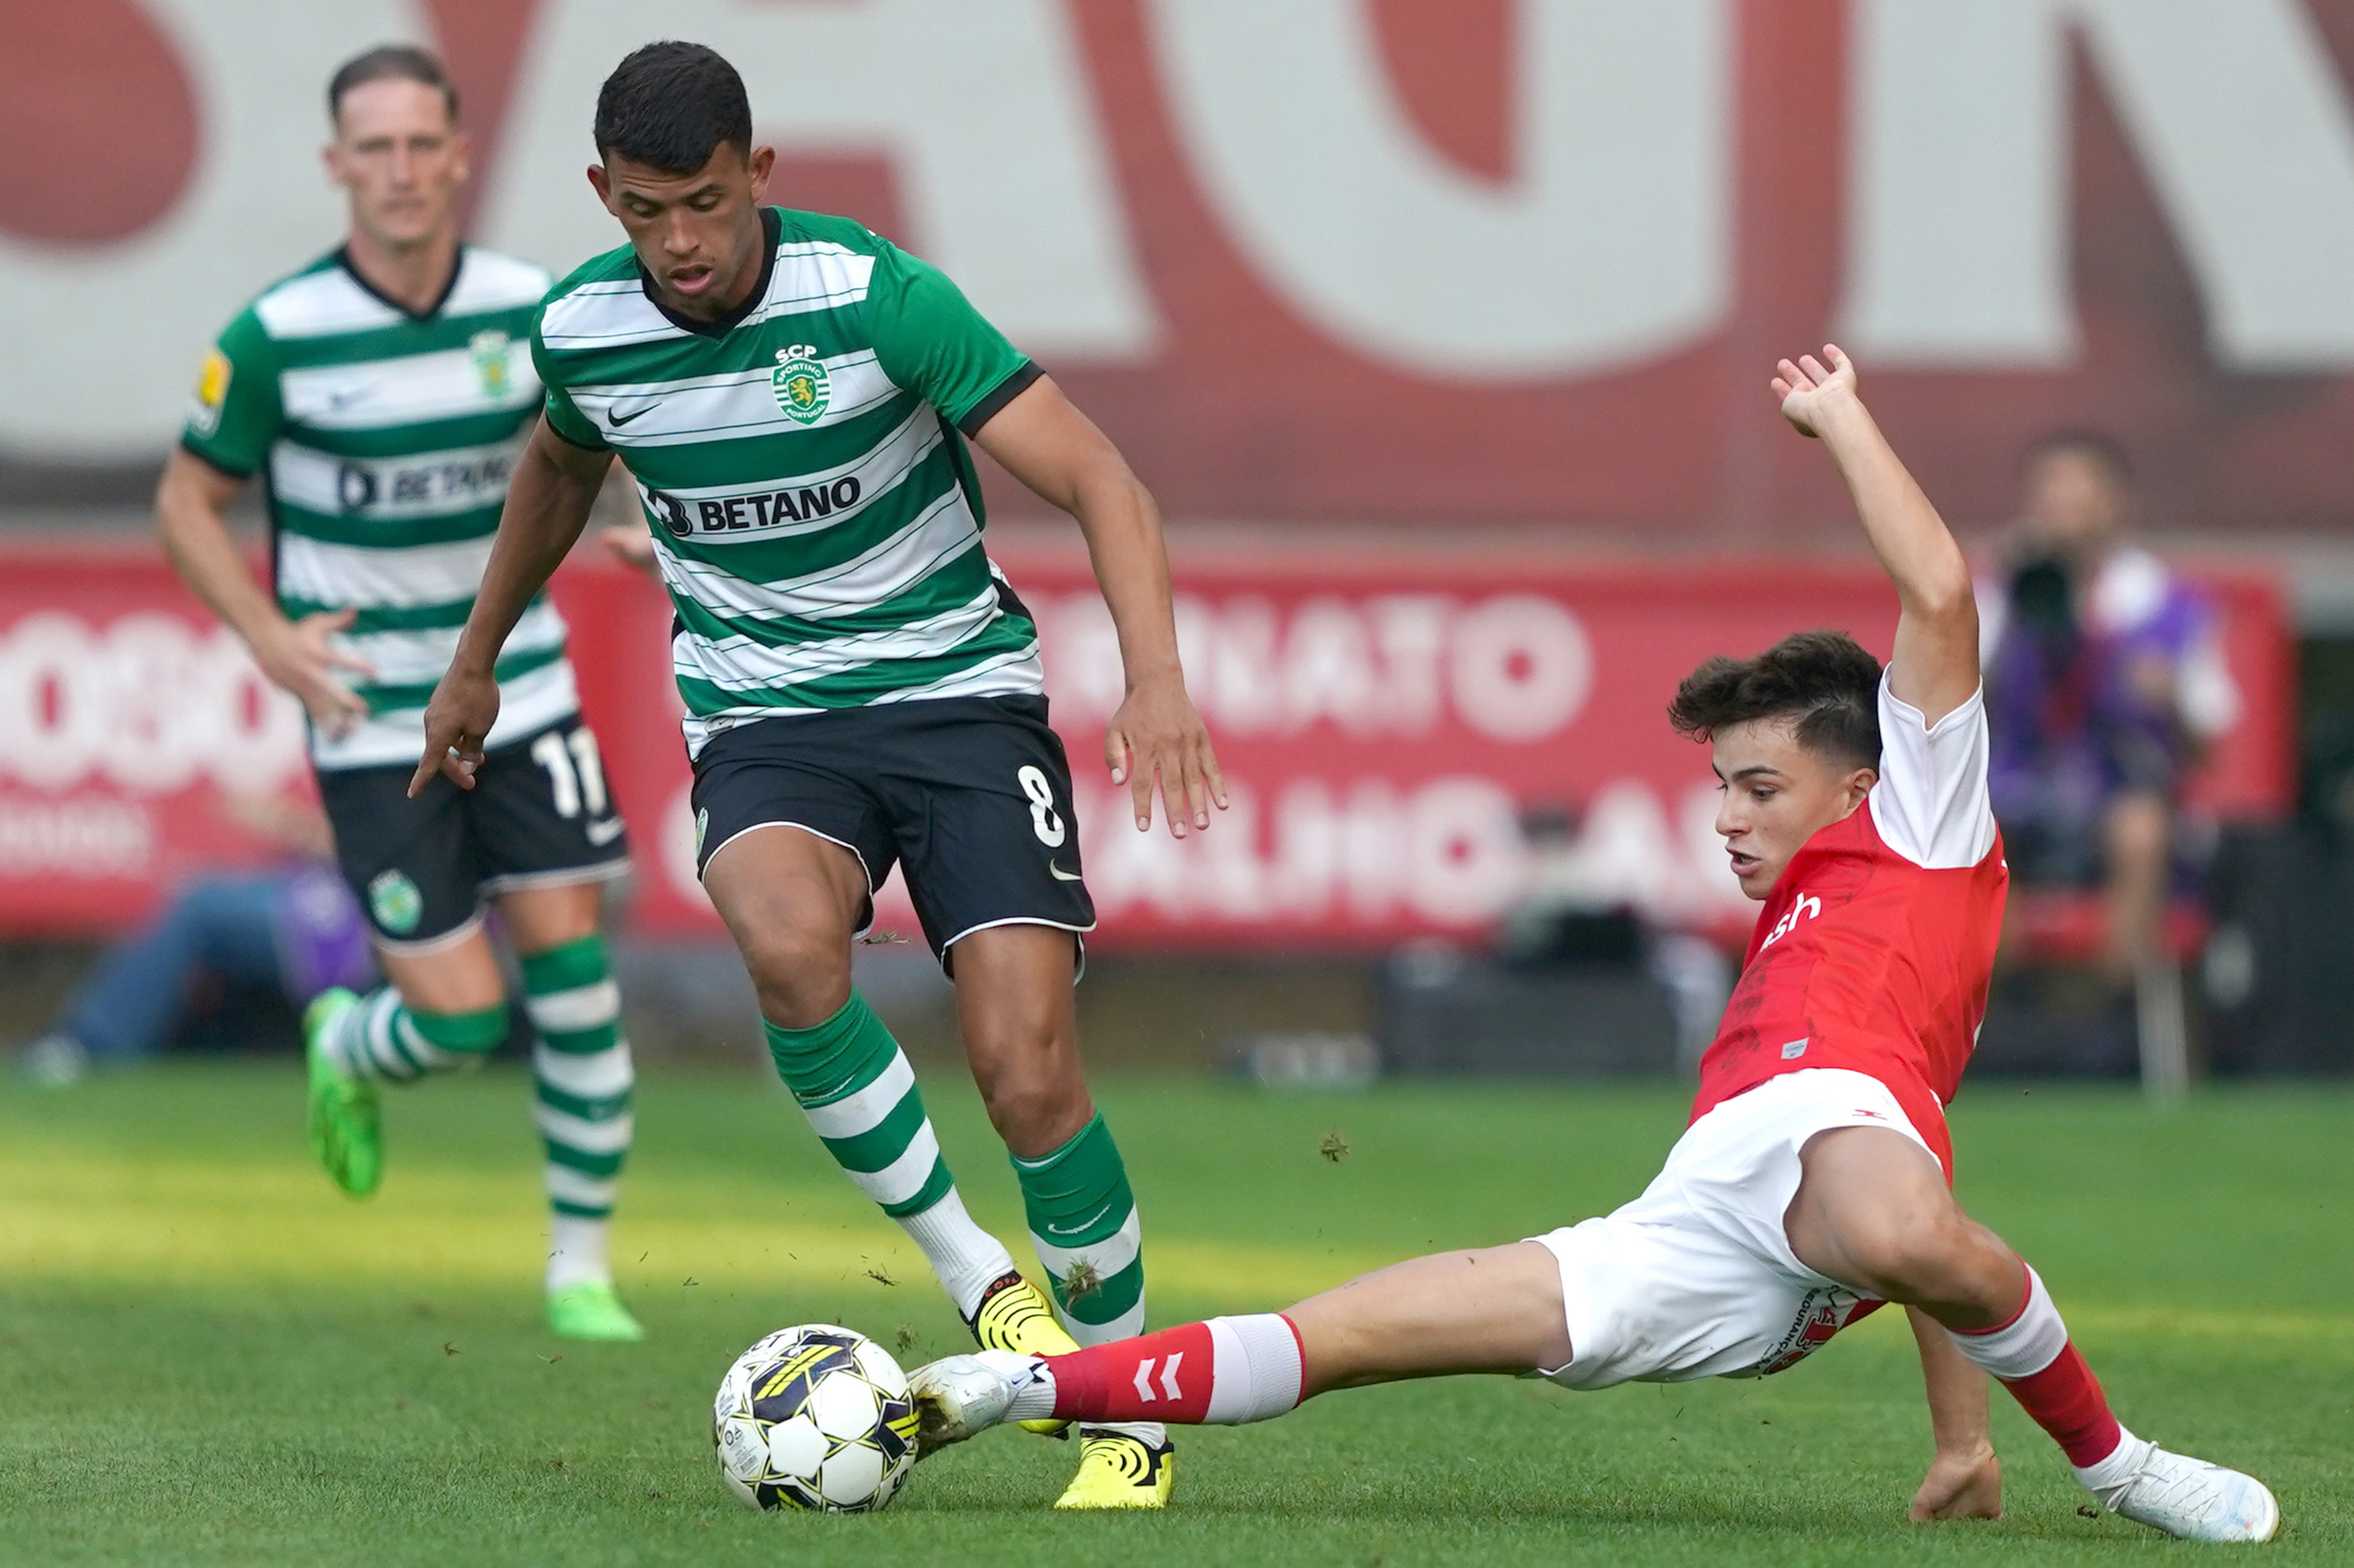 DESPORTO (Futebol) - Termina em Braga e deu empate (1-1) entre SC Braga e  Sporting CP - O Amarense